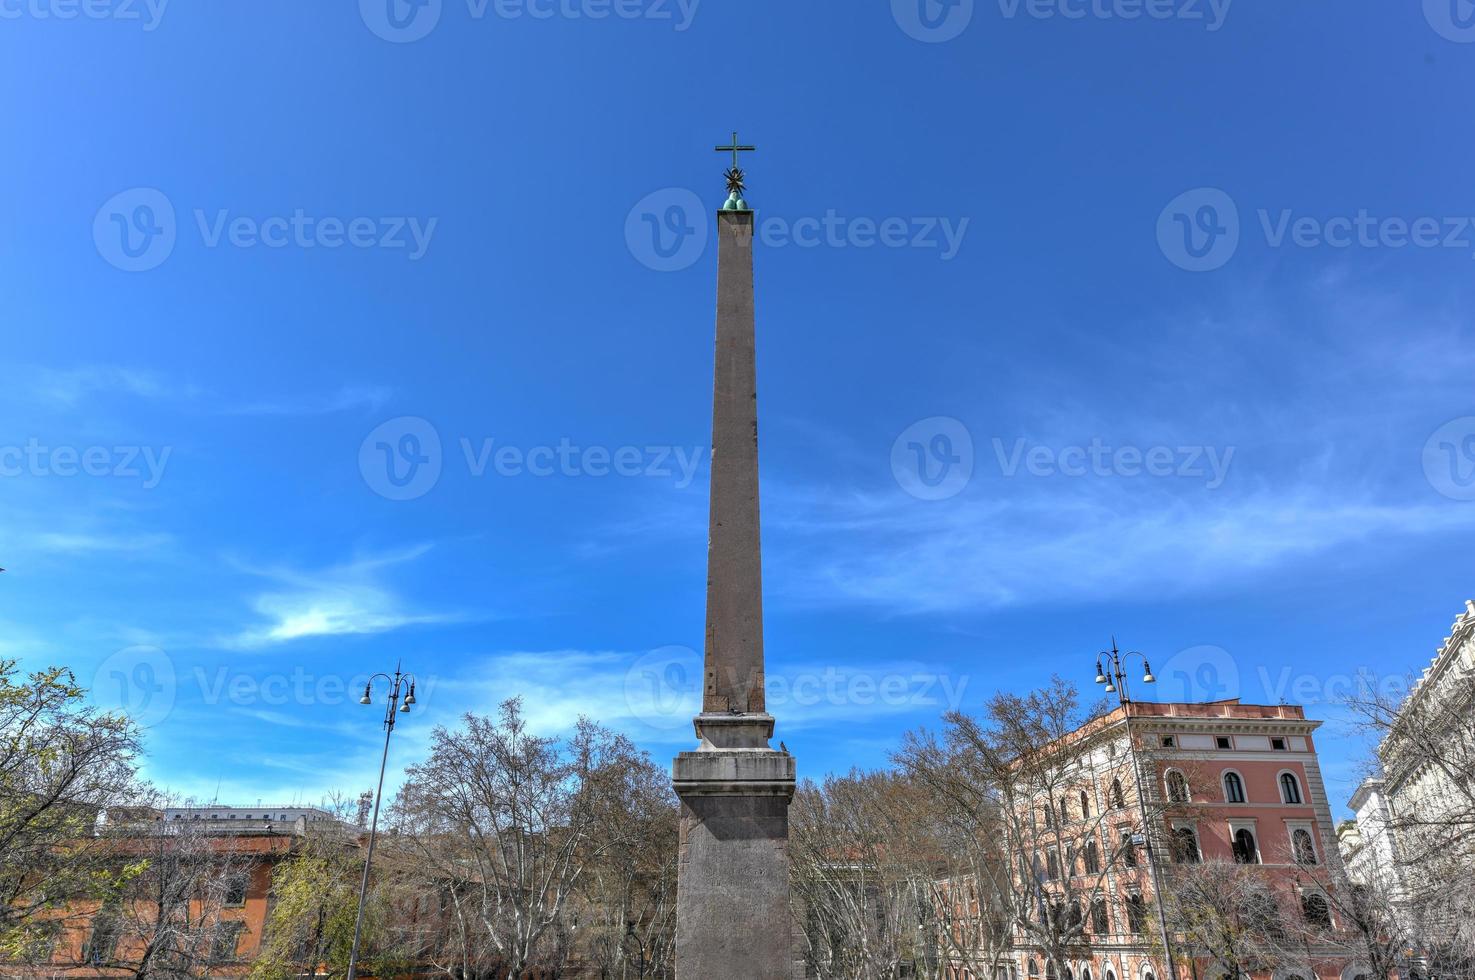 Obelisco Esquilino, Obelisk in front of Basilica di Santa Maria Maggiore in Rome, Italy photo